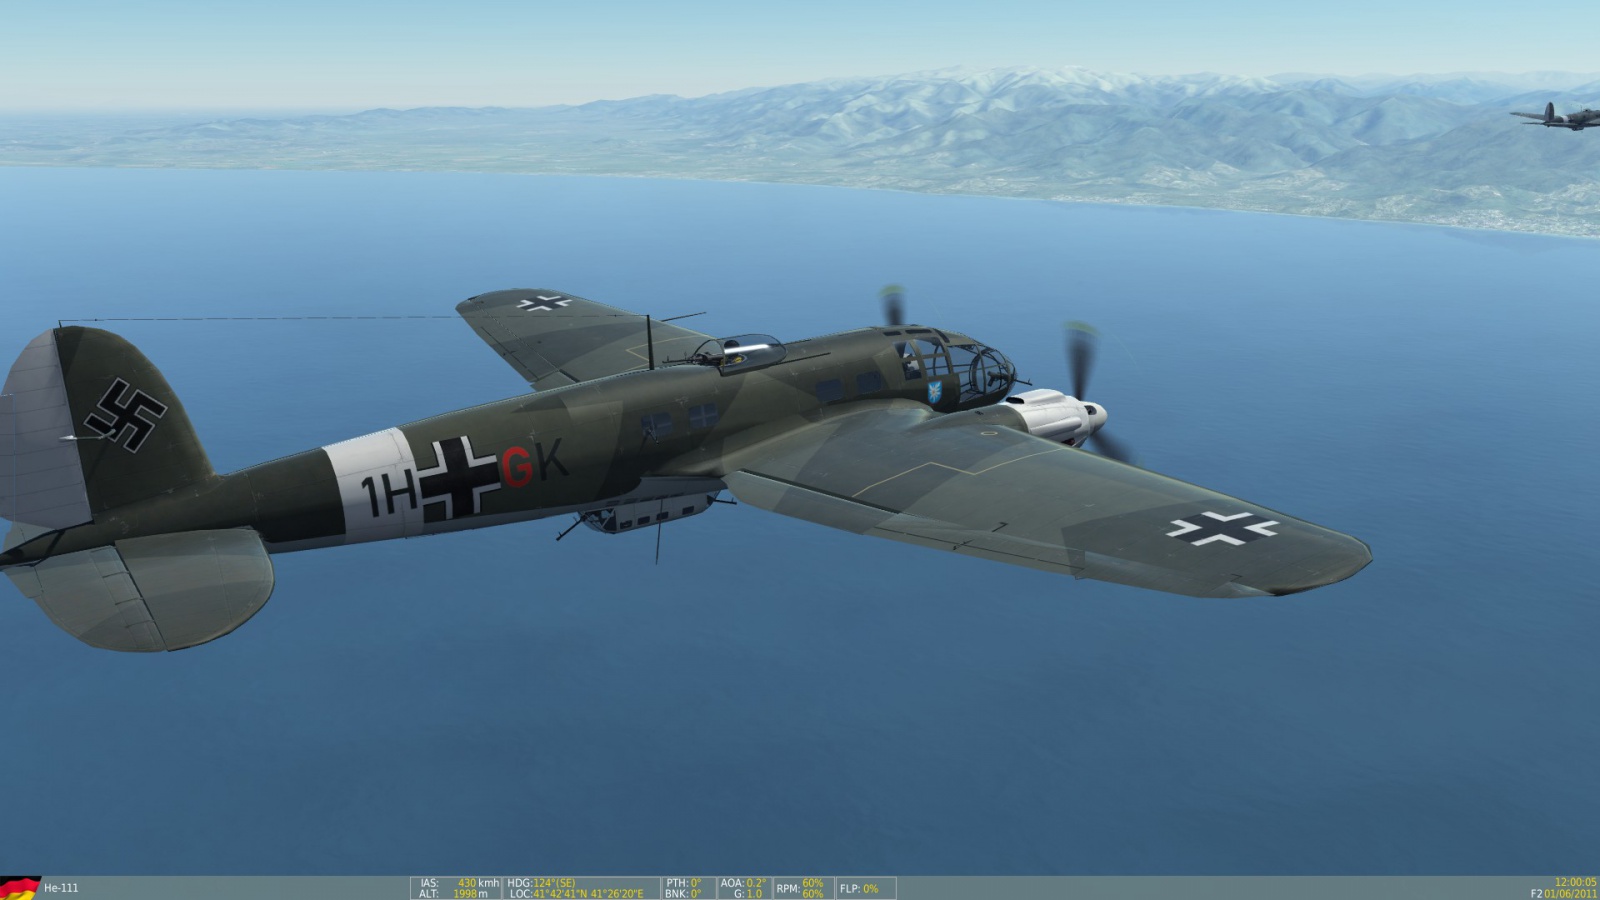 Amazing Heinkel He 111 Pictures & Backgrounds